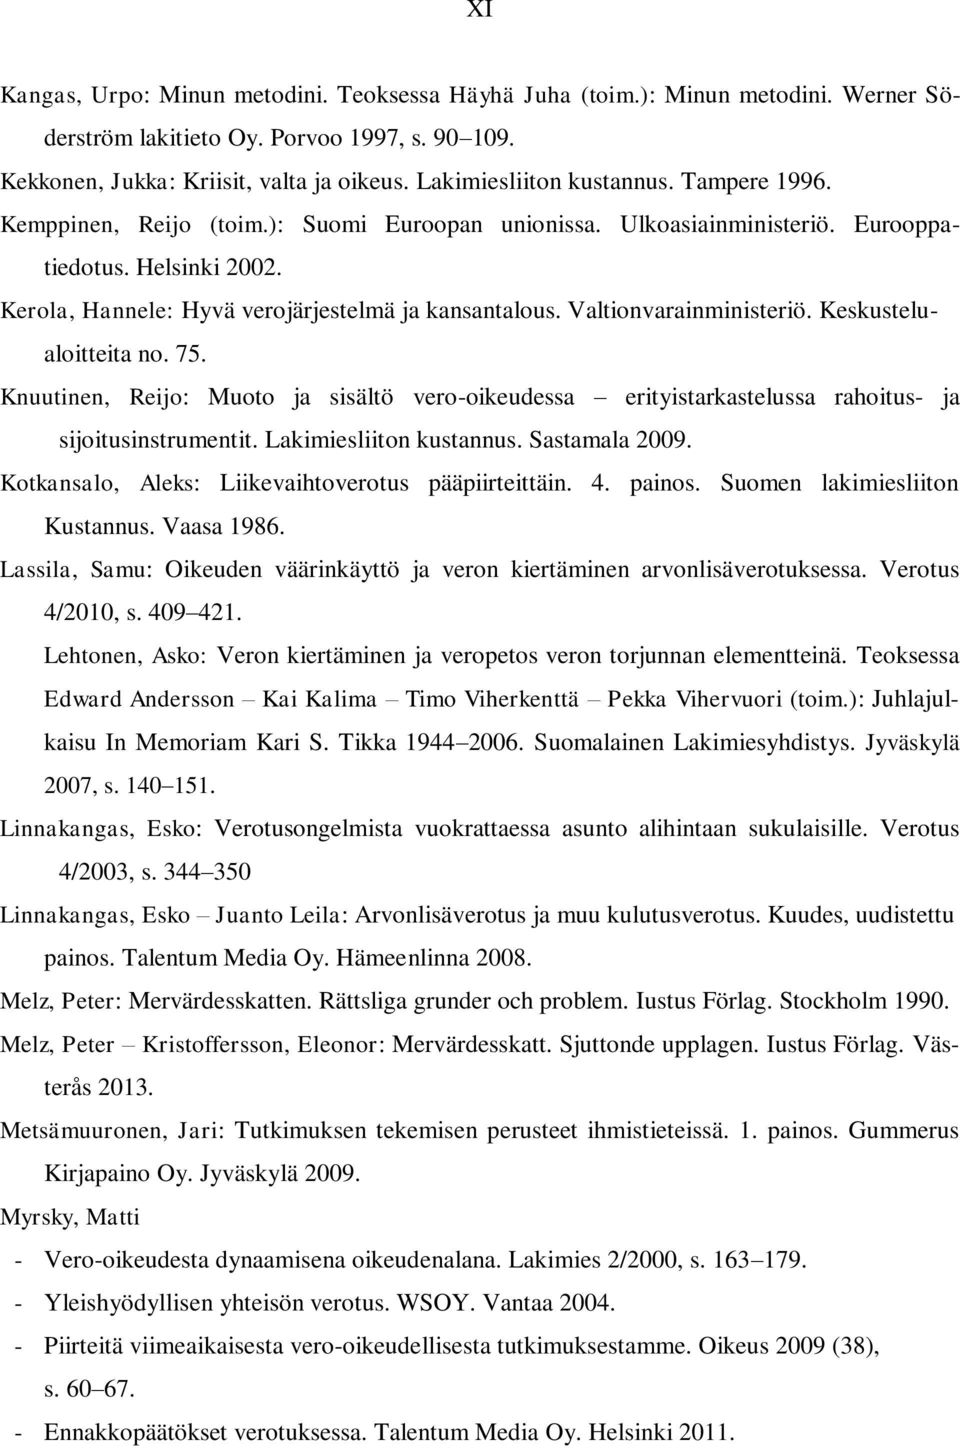 Kerola, Hannele: Hyvä verojärjestelmä ja kansantalous. Valtionvarainministeriö. Keskustelualoitteita no. 75.